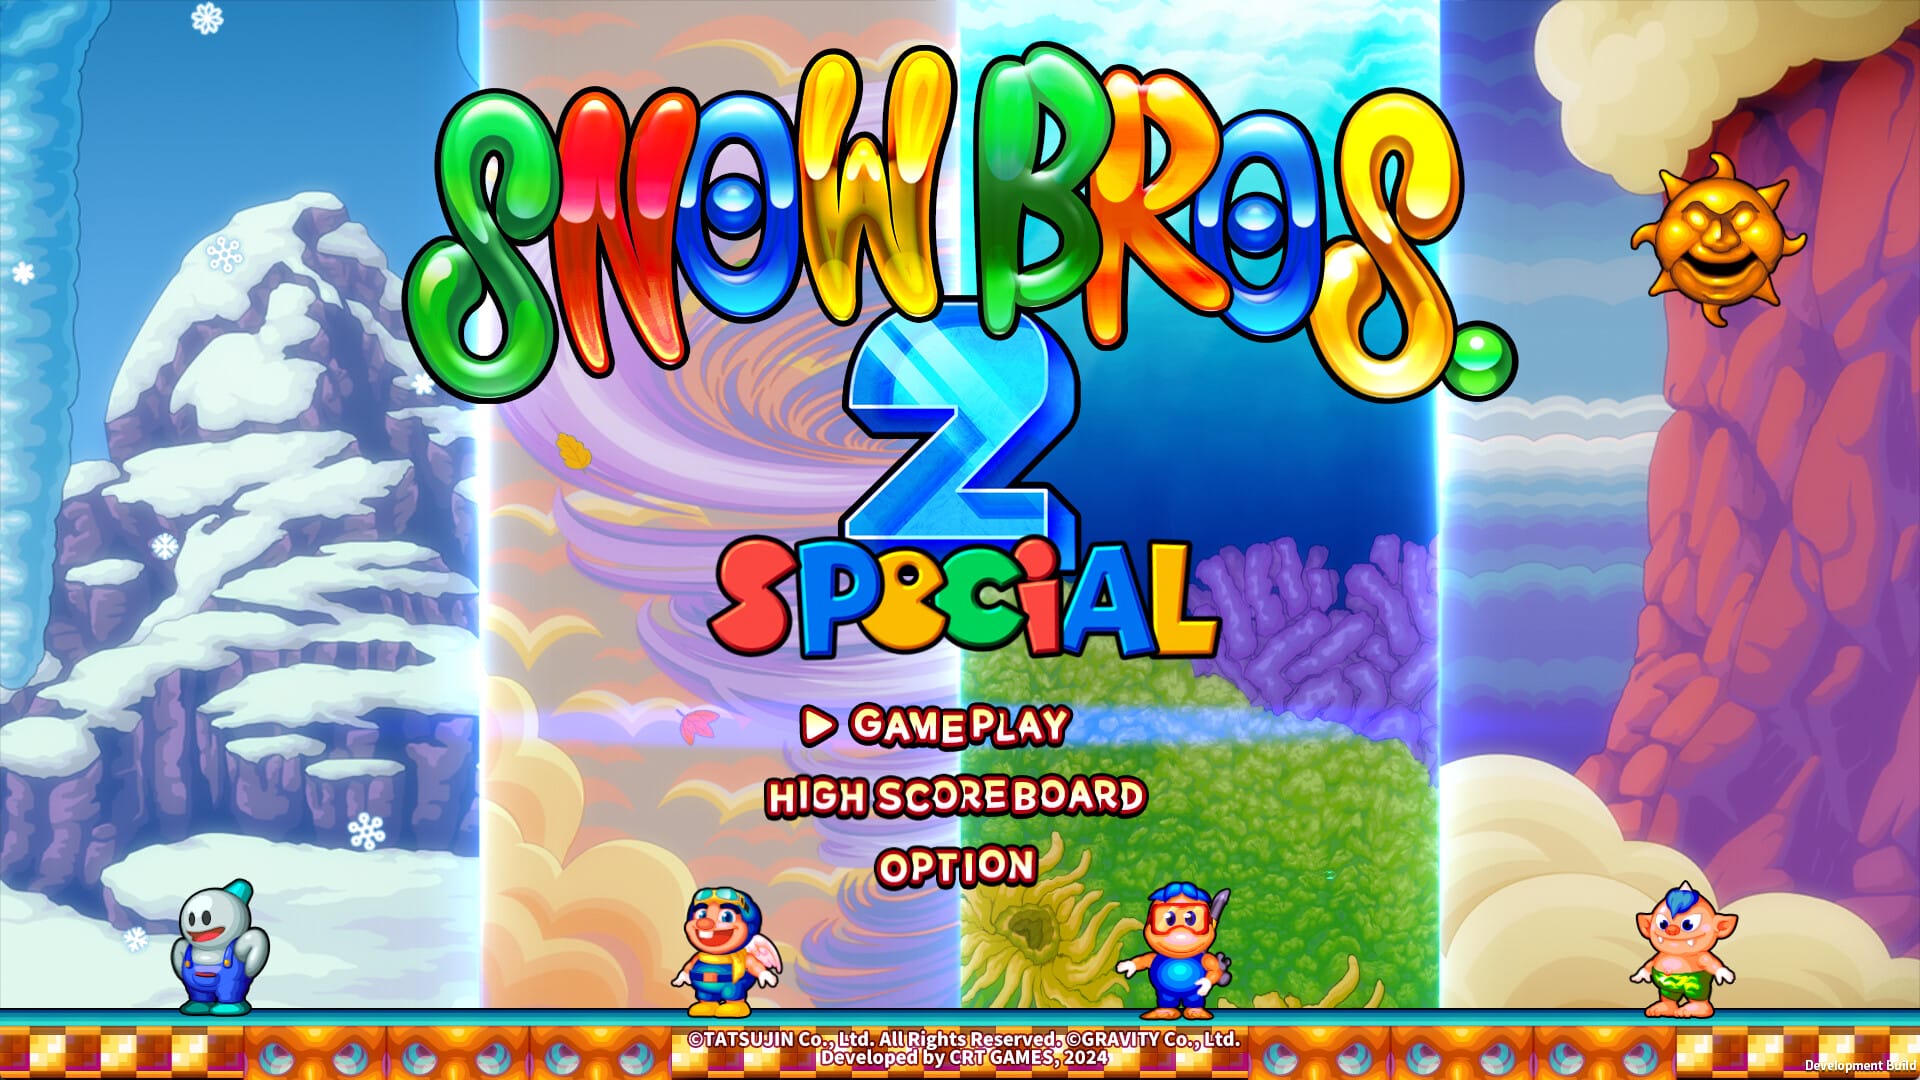 Anunciado Snow Bros. 2 Special para Nintendo Switch y Steam